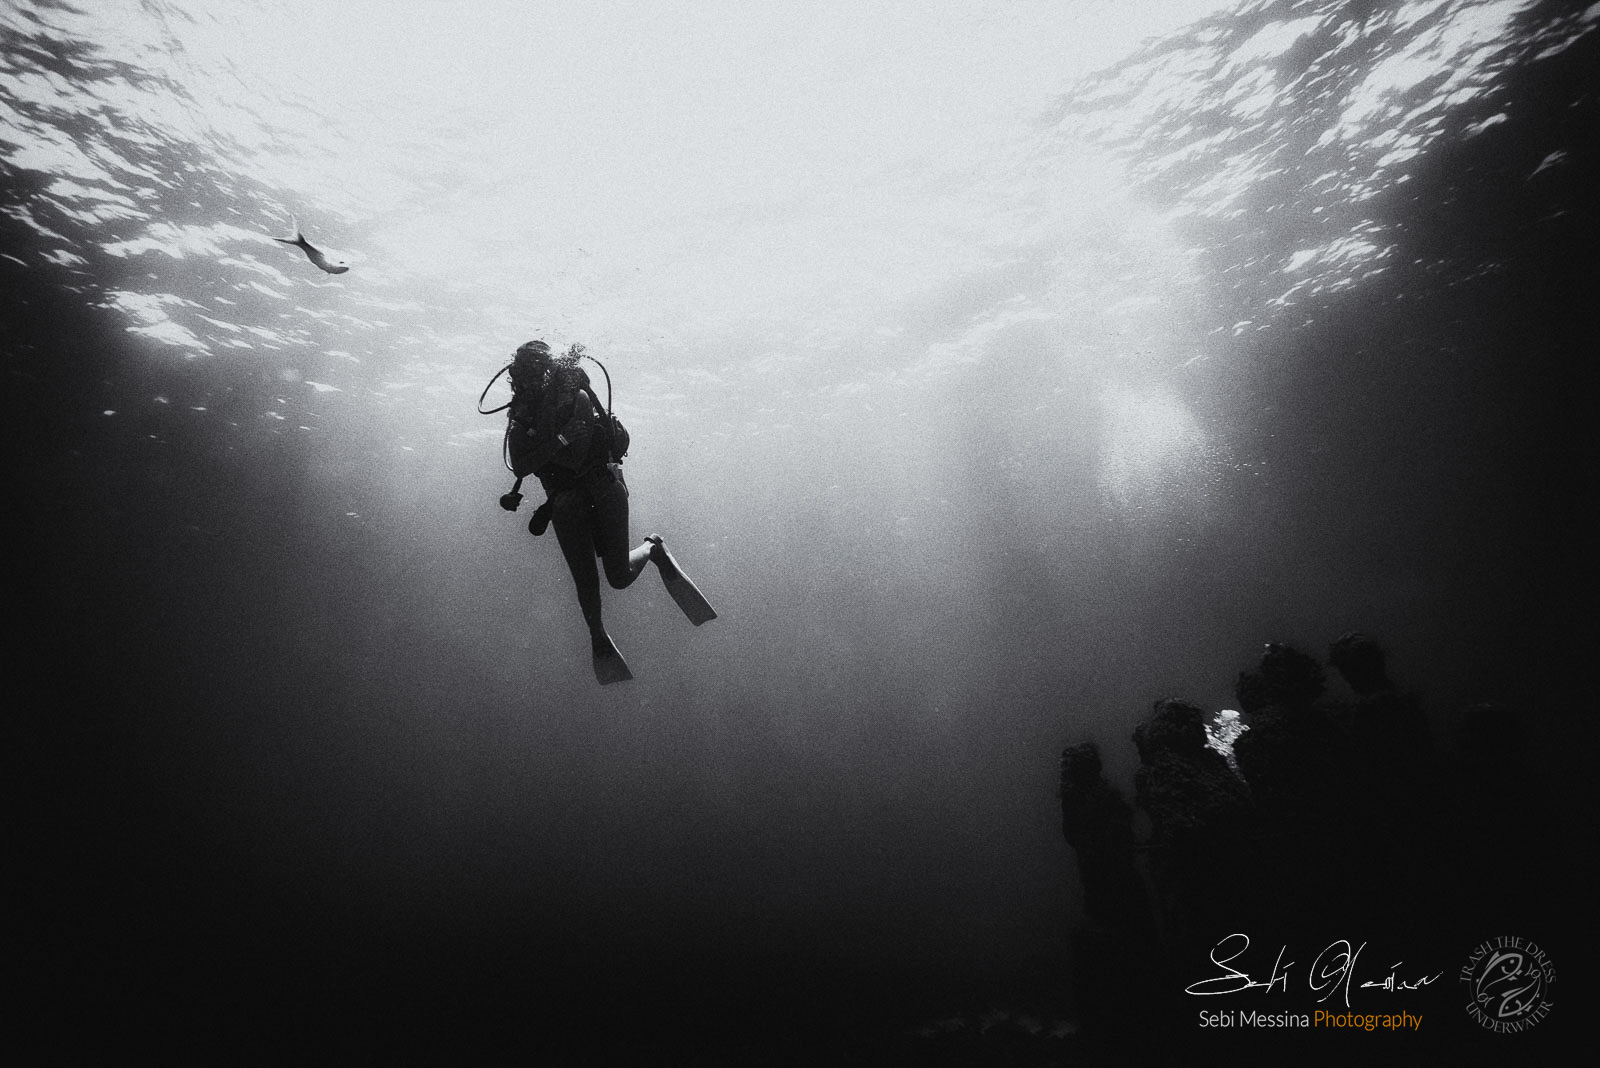 Cancun Underwater Museum - Sebi Messina Photography